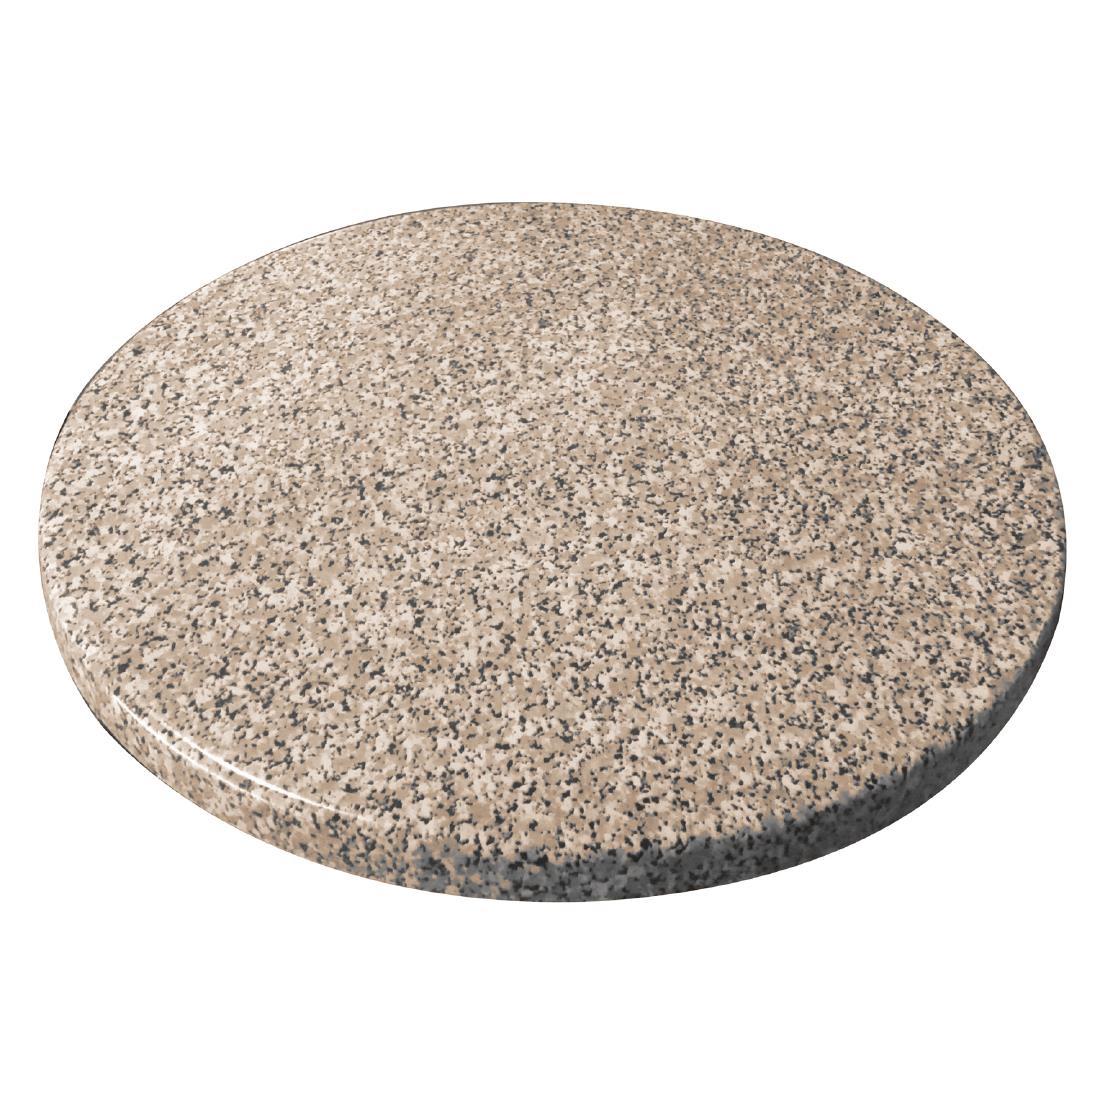 Bolero Pre-drilled Round Granite Table Top 600mm - GG596  - 1